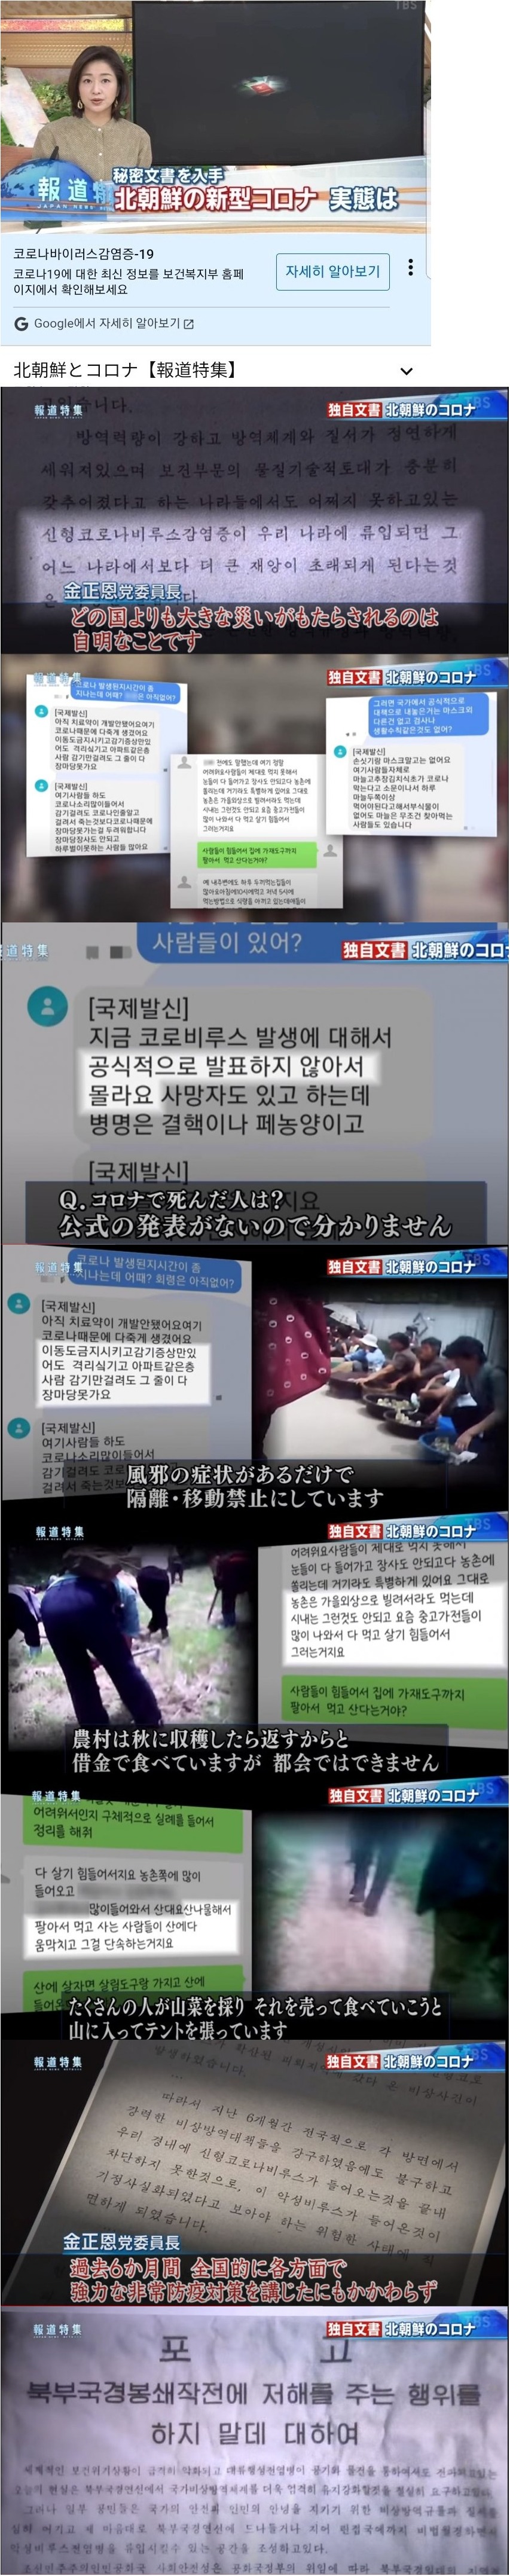 일본 방송에 나온 북한 코로나 상황